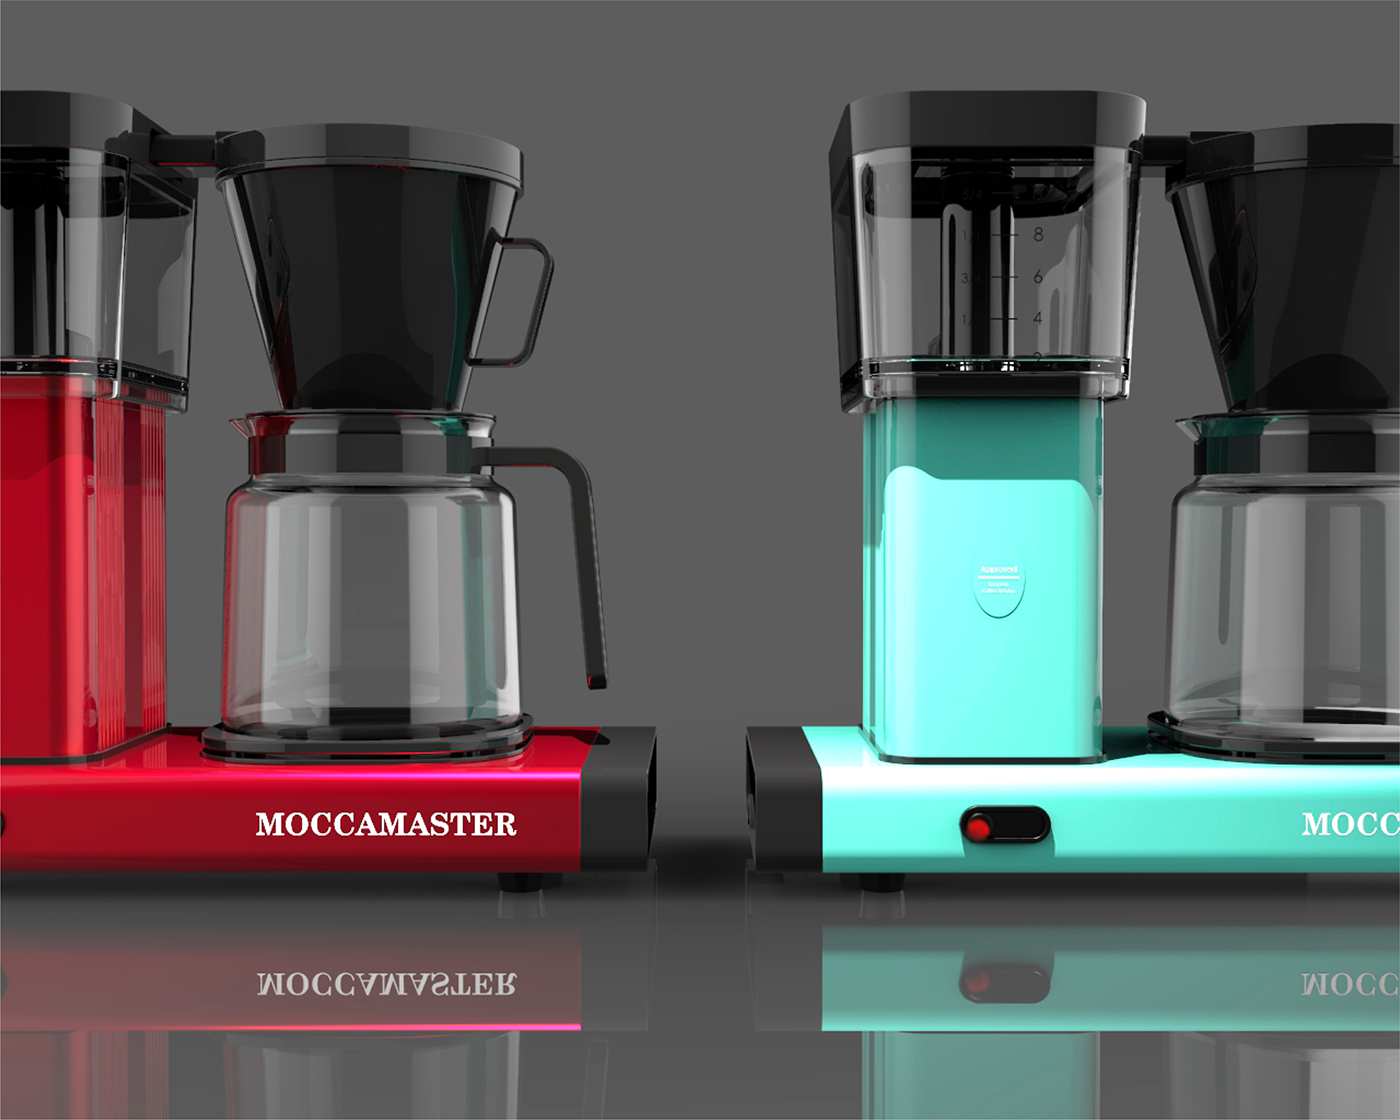 moccamaster cafetera keyshot Render Coffee machine